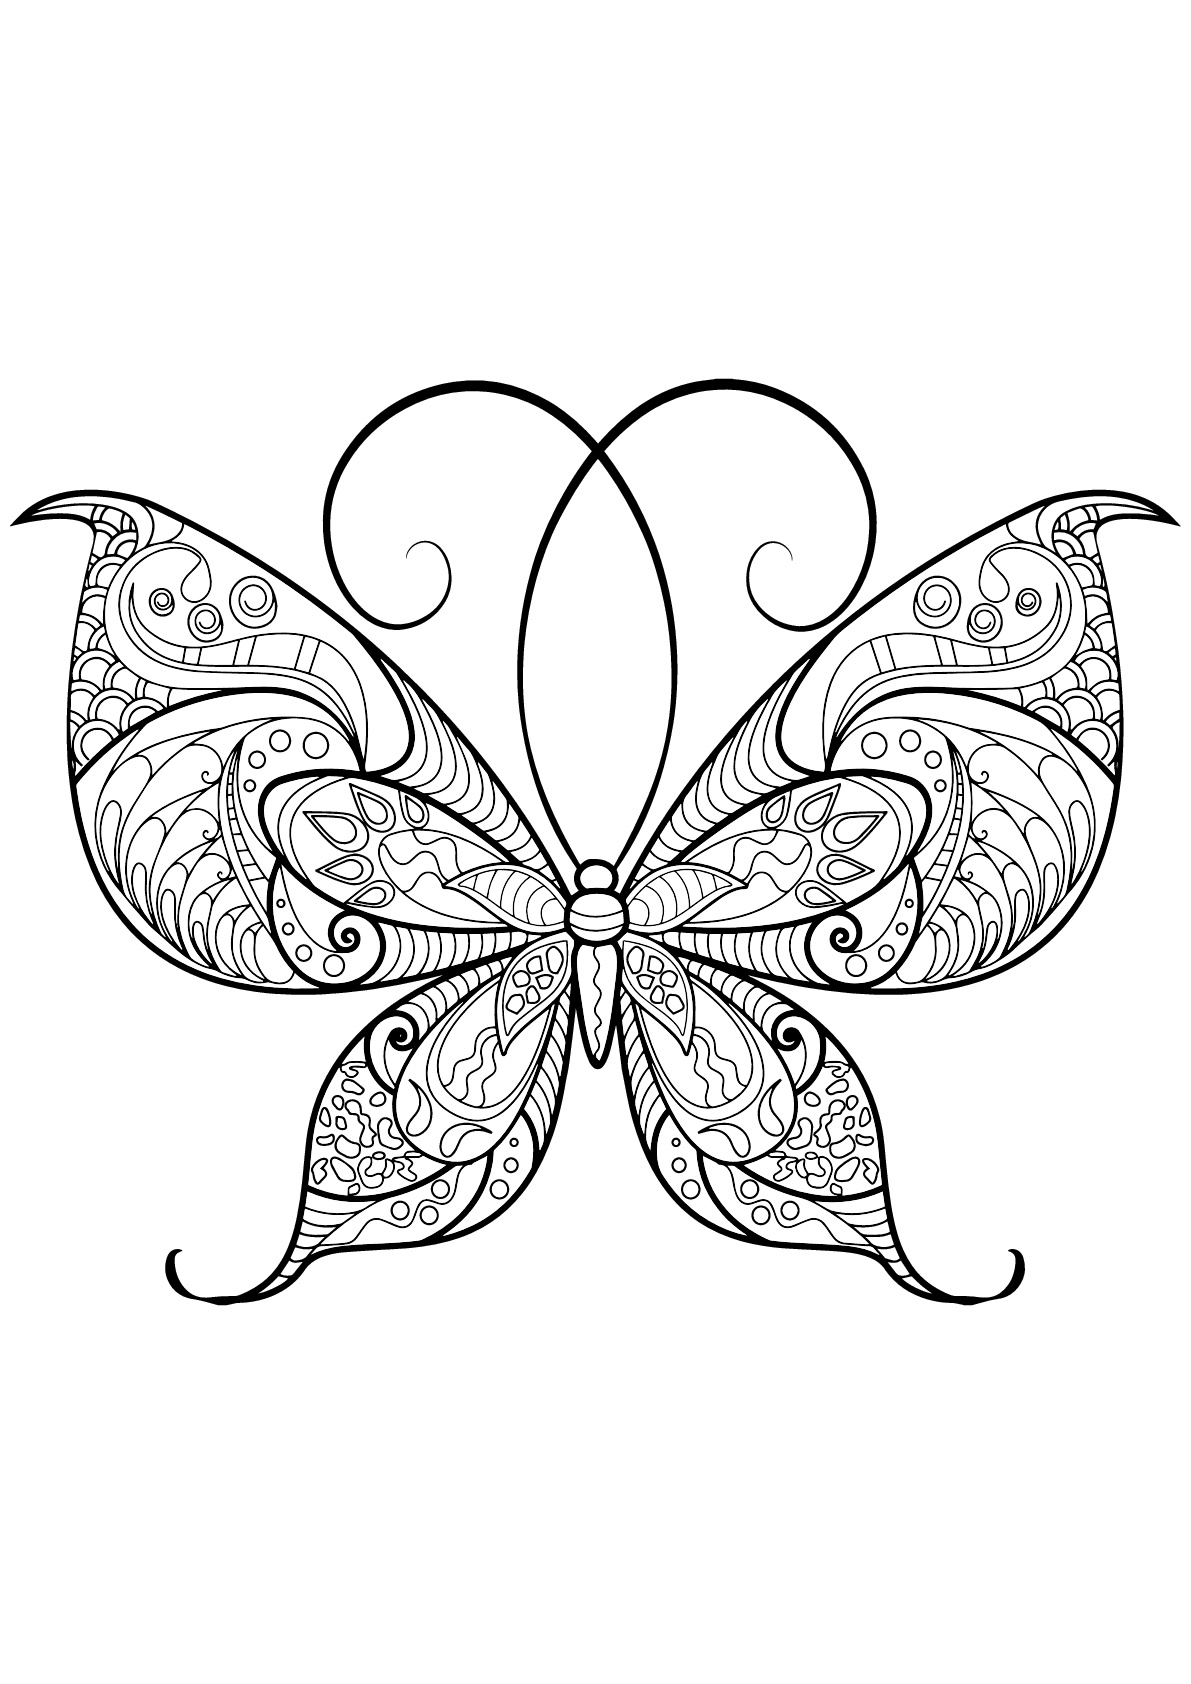 Mariposa con bellos e intrincados dibujos - 13